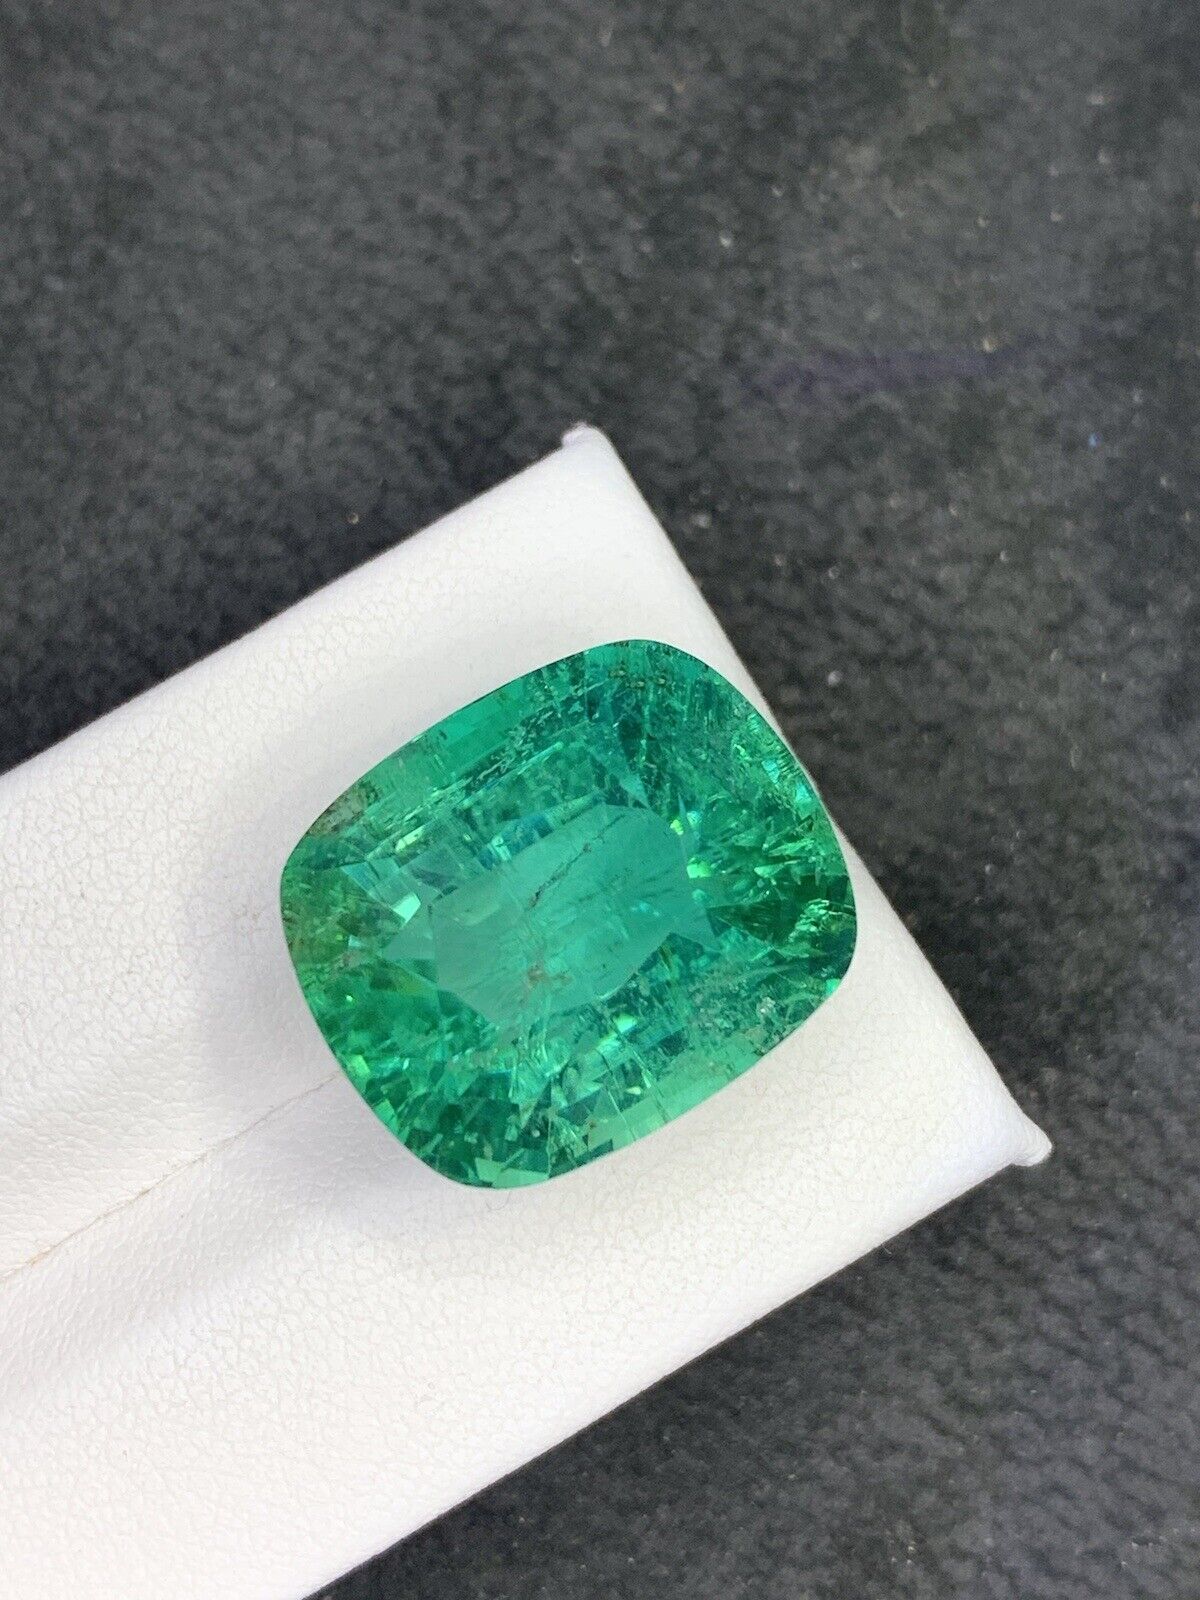 40 Carat Green kunzite fancy cut gemstone from Afghanistan heated